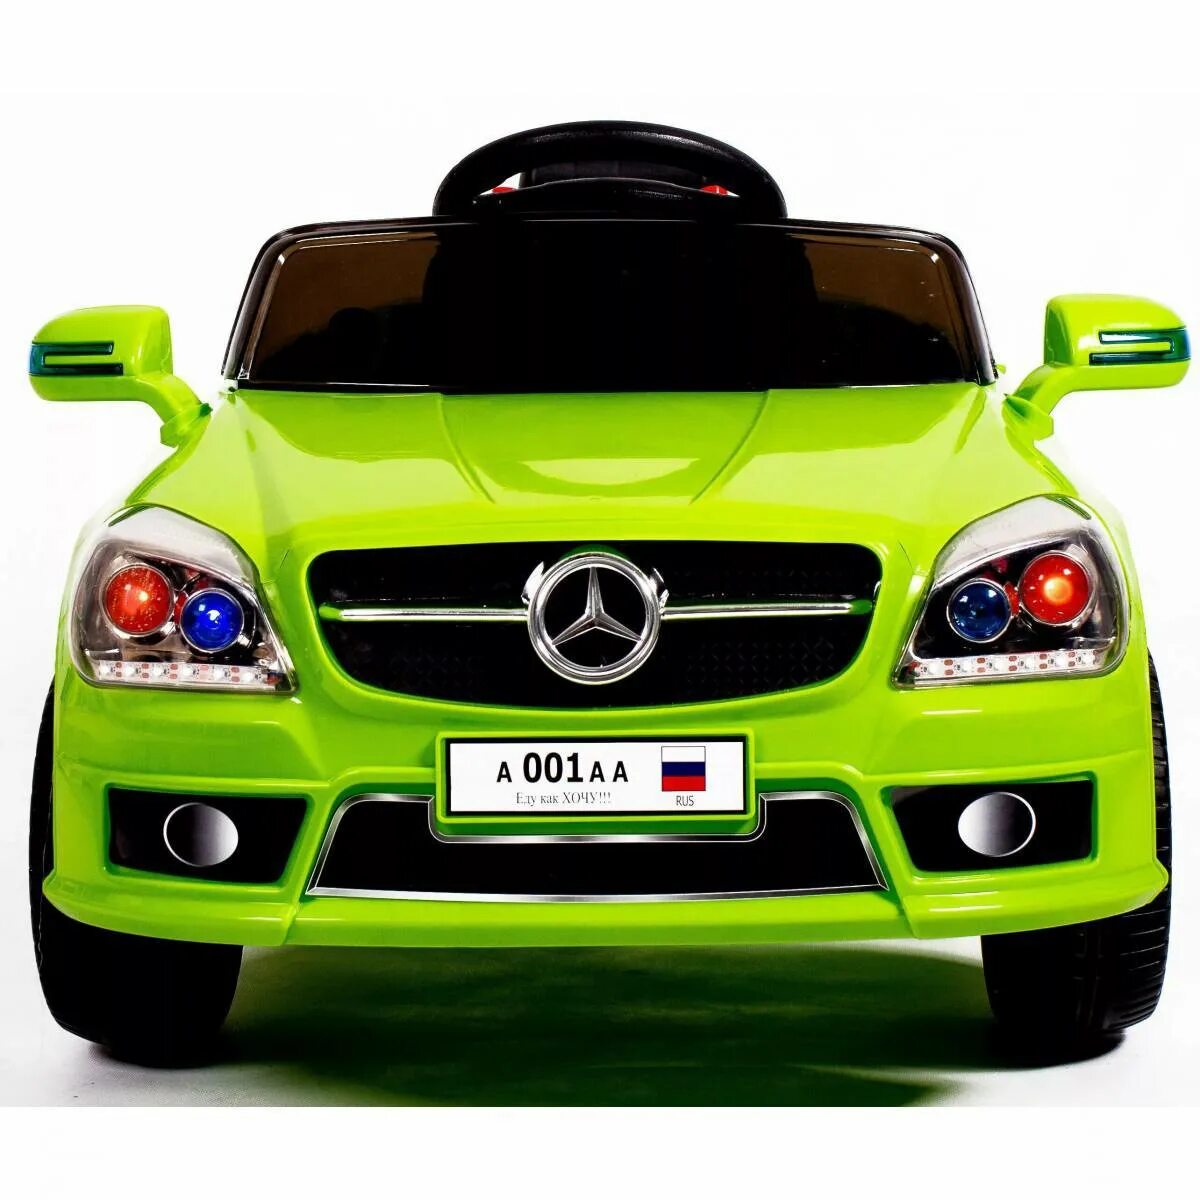 Автомобиль для детей. Детская машина. Зеленая машина для детей. Машины картинки для детей цветные. Покажи машину авто